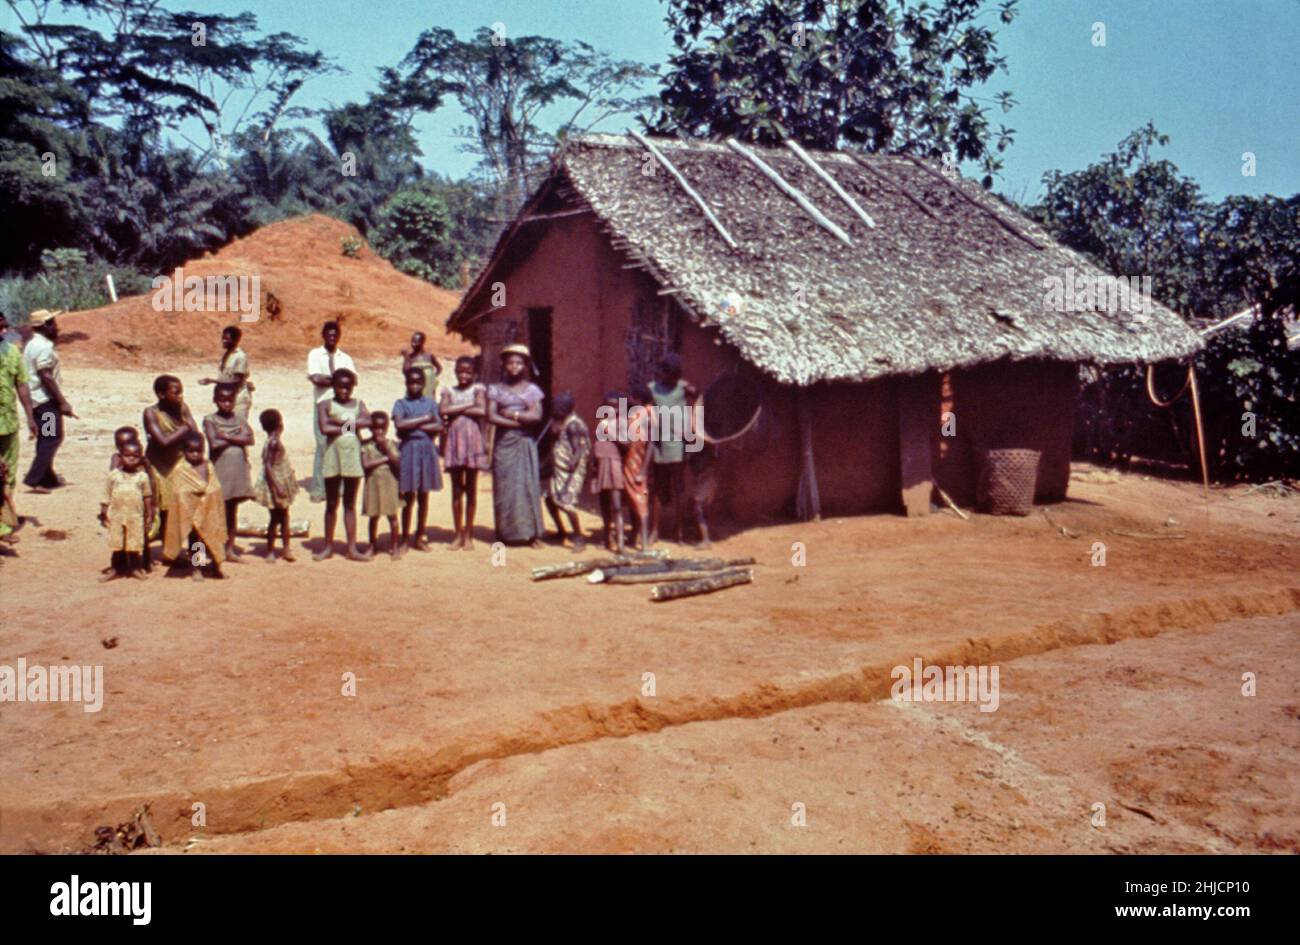 Bewohner von Yambuku, Zaire (heute Demokratische Republik Kongo), die während des Ebola-Ausbruchs im Jahr 1976 von Eis-Beamten des CDC untersucht wurden. Ebola-Virusinfektionen wurden erstmals im Jahr 1976 erkannt, als simultane, aber getrennte Ausbrüche von menschlichen Krankheiten, die durch zwei unterschiedliche Virusuntertypen verursacht wurden, im nördlichen Zaire und im Südsudan ausbrachen und zu Hunderten von Todesfällen führten. Stockfoto